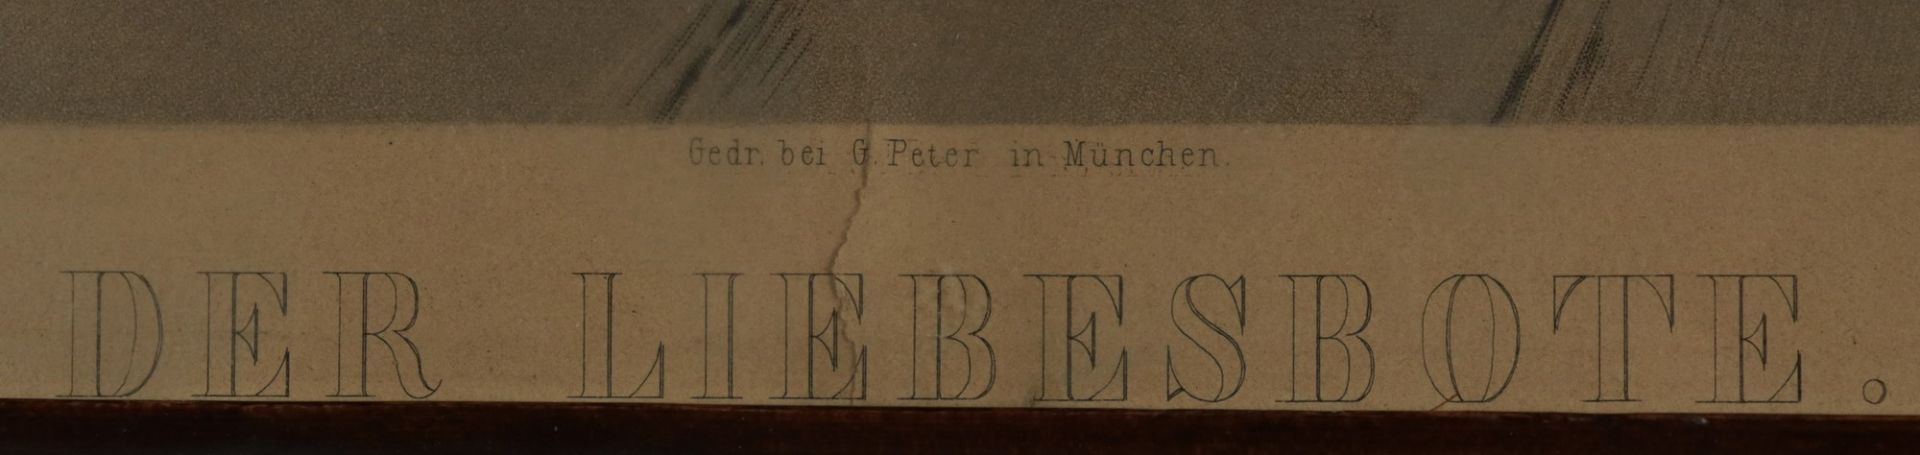 Genreszene - Sagert, Hermann 1822-1889, Kupferstecher u. Kunsthändler, bez. "Der Liebesbote", - Image 2 of 5